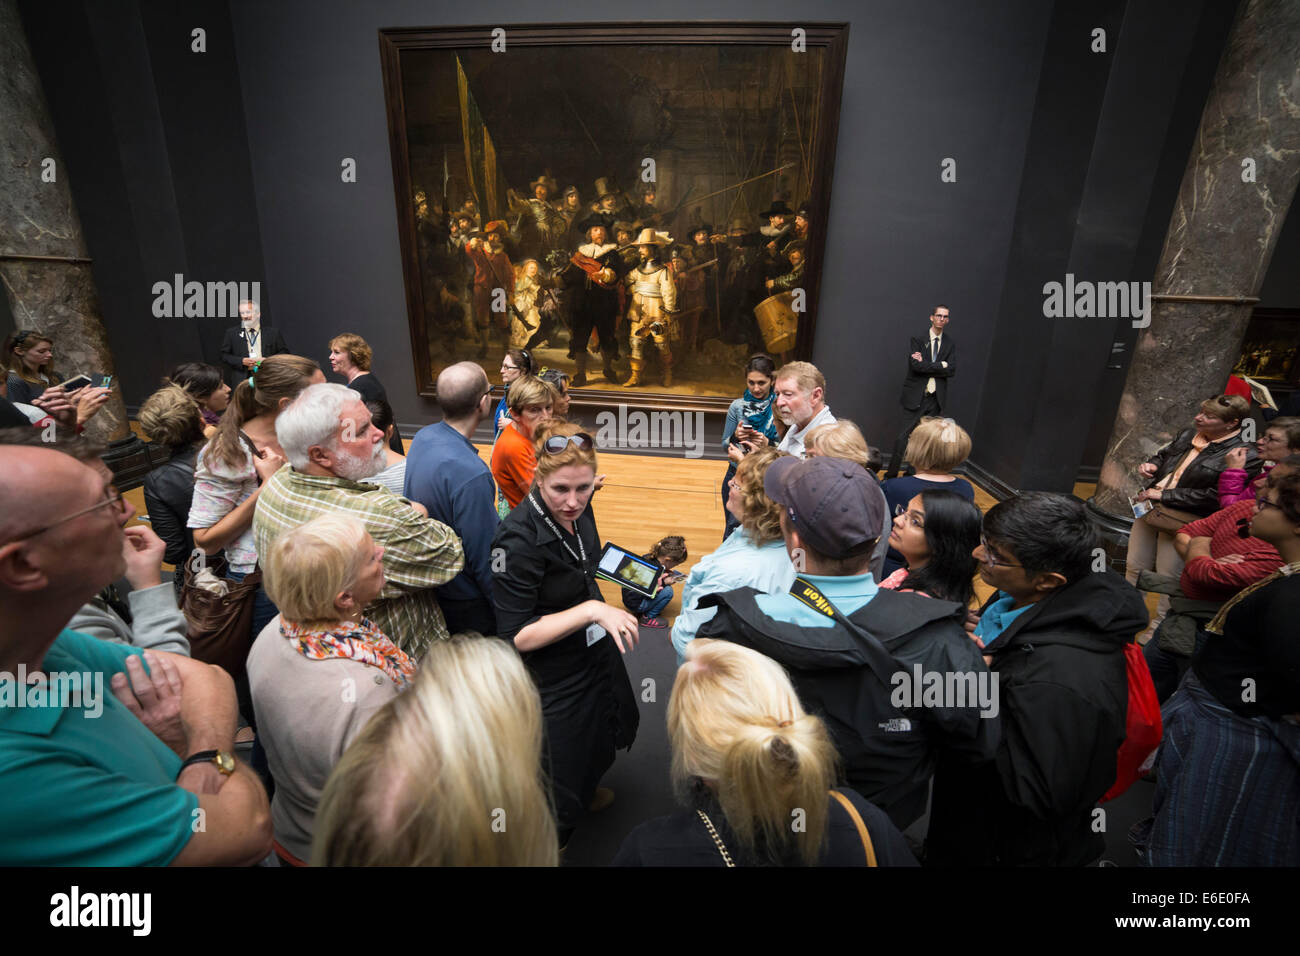 Les gens qui suivent le célèbre tableau "La Ronde" de Rembrandt van Rijn au Rijksmuseum à Amsterdam. Aussi disponible en b&w nr. E6E0F9 Banque D'Images